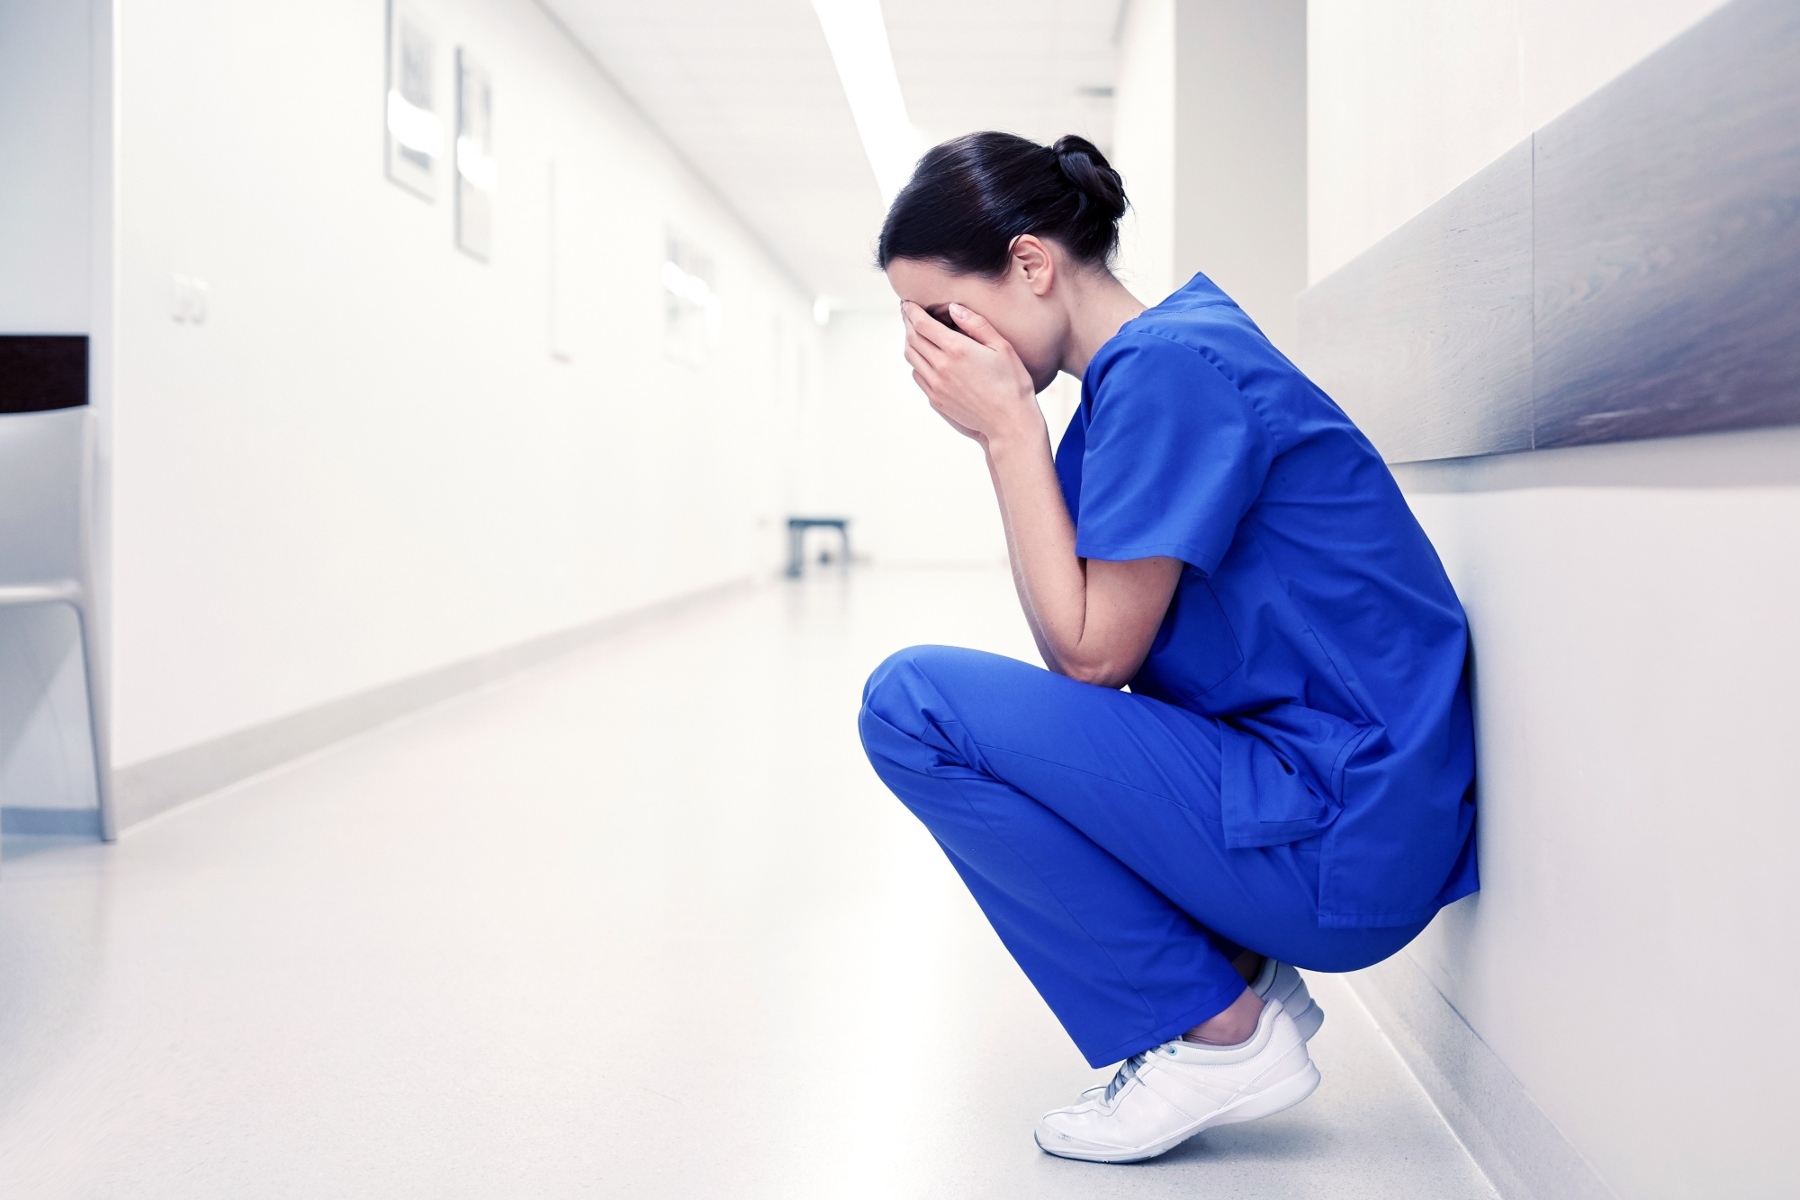 Καναδάς υγειονομική περίθαλψη: Οι μισοί Καναδοί δεν έχουν γιατρό ή παλεύουν για ραντεβού